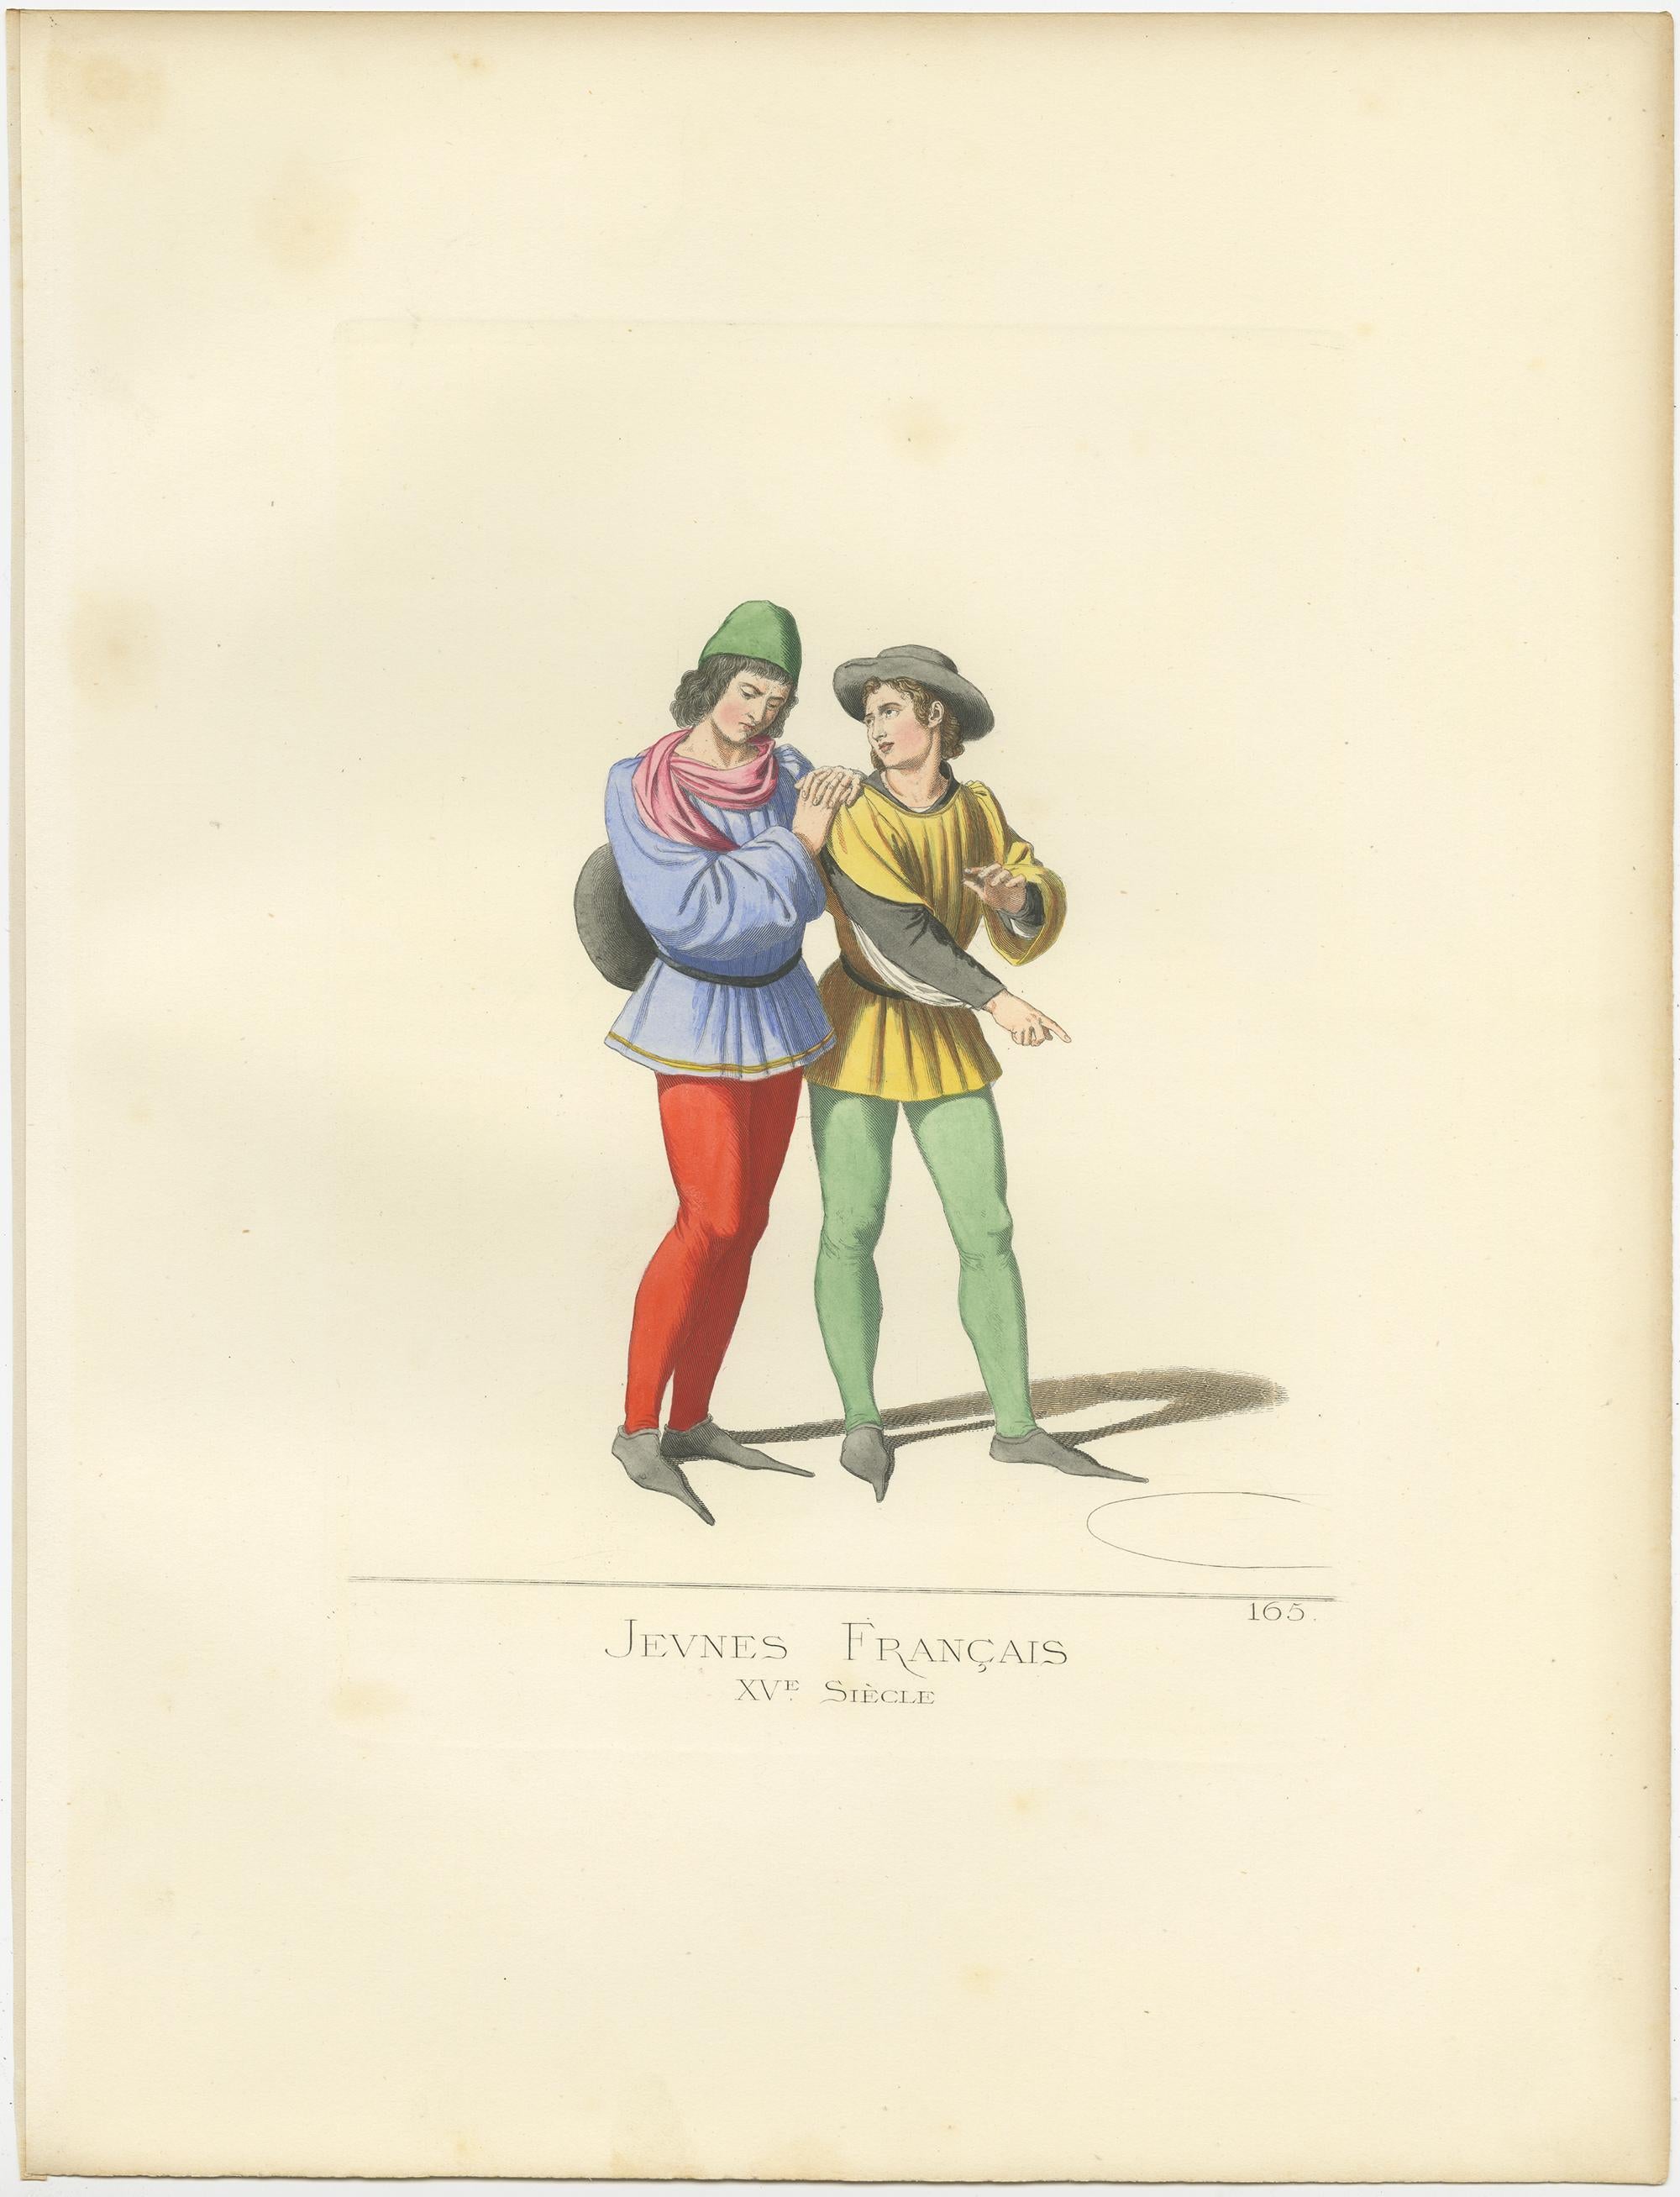 Antique print titled ‘Jeune Francais, XVe Siecle.’ Original antique print of two young French men, 15th Century. This print originates from 'Costumes historiques de femmes du XIII, XIV et XV siècle' by C. Bonnard. Published 1860.